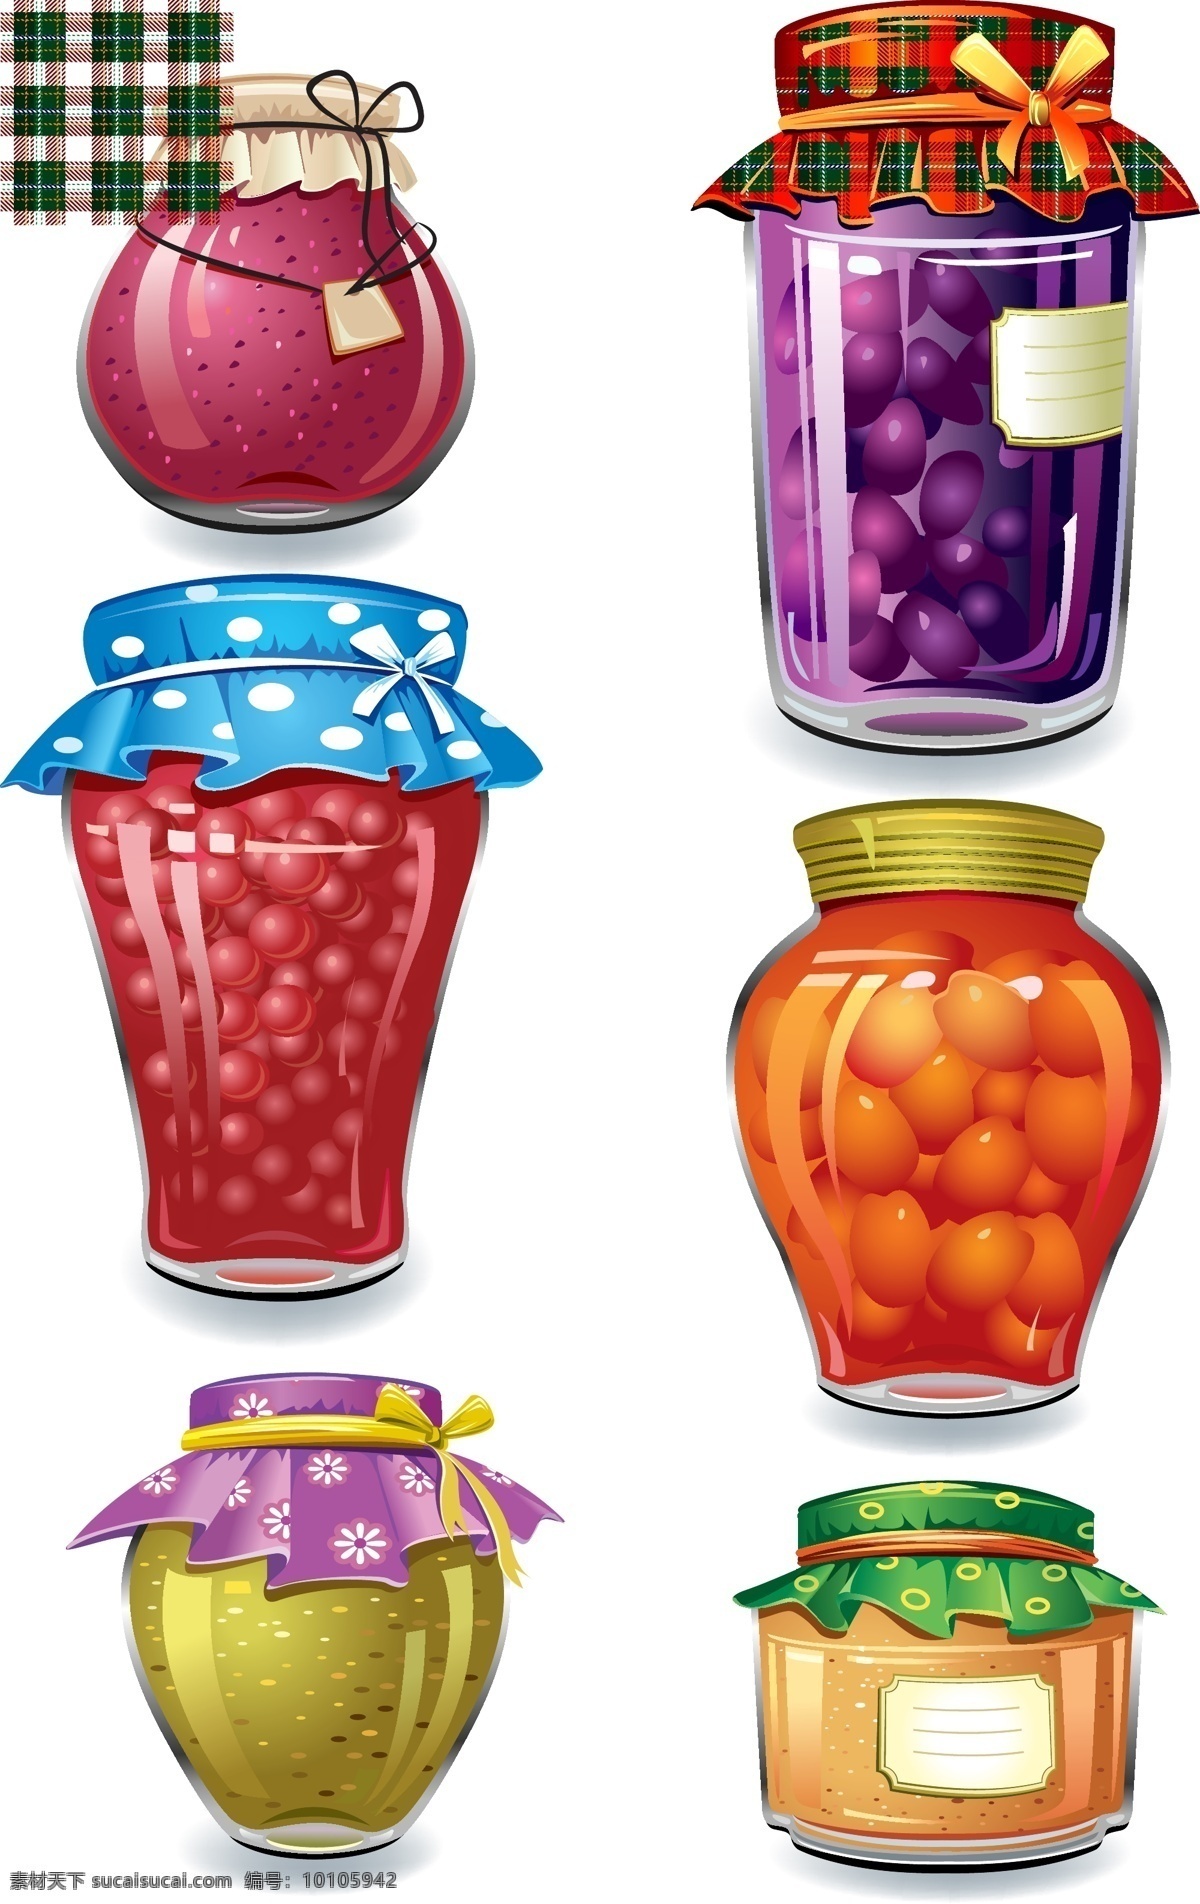 水果罐头 包装设计 矢量图 其他矢量图